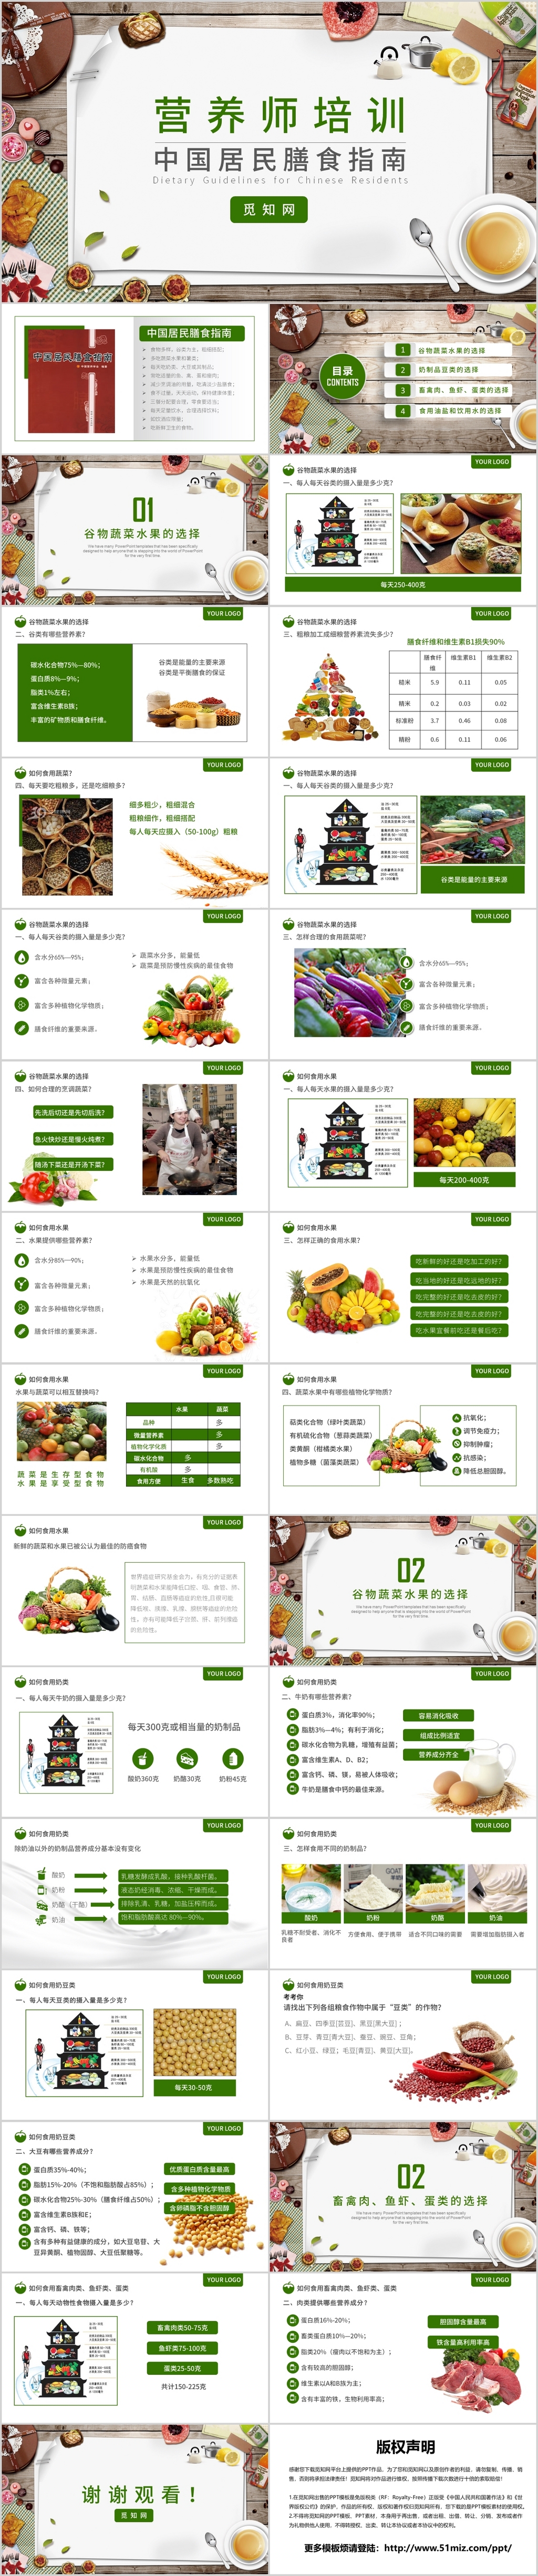 2019绿色营养师培训PPT模板 中国居民膳食指南